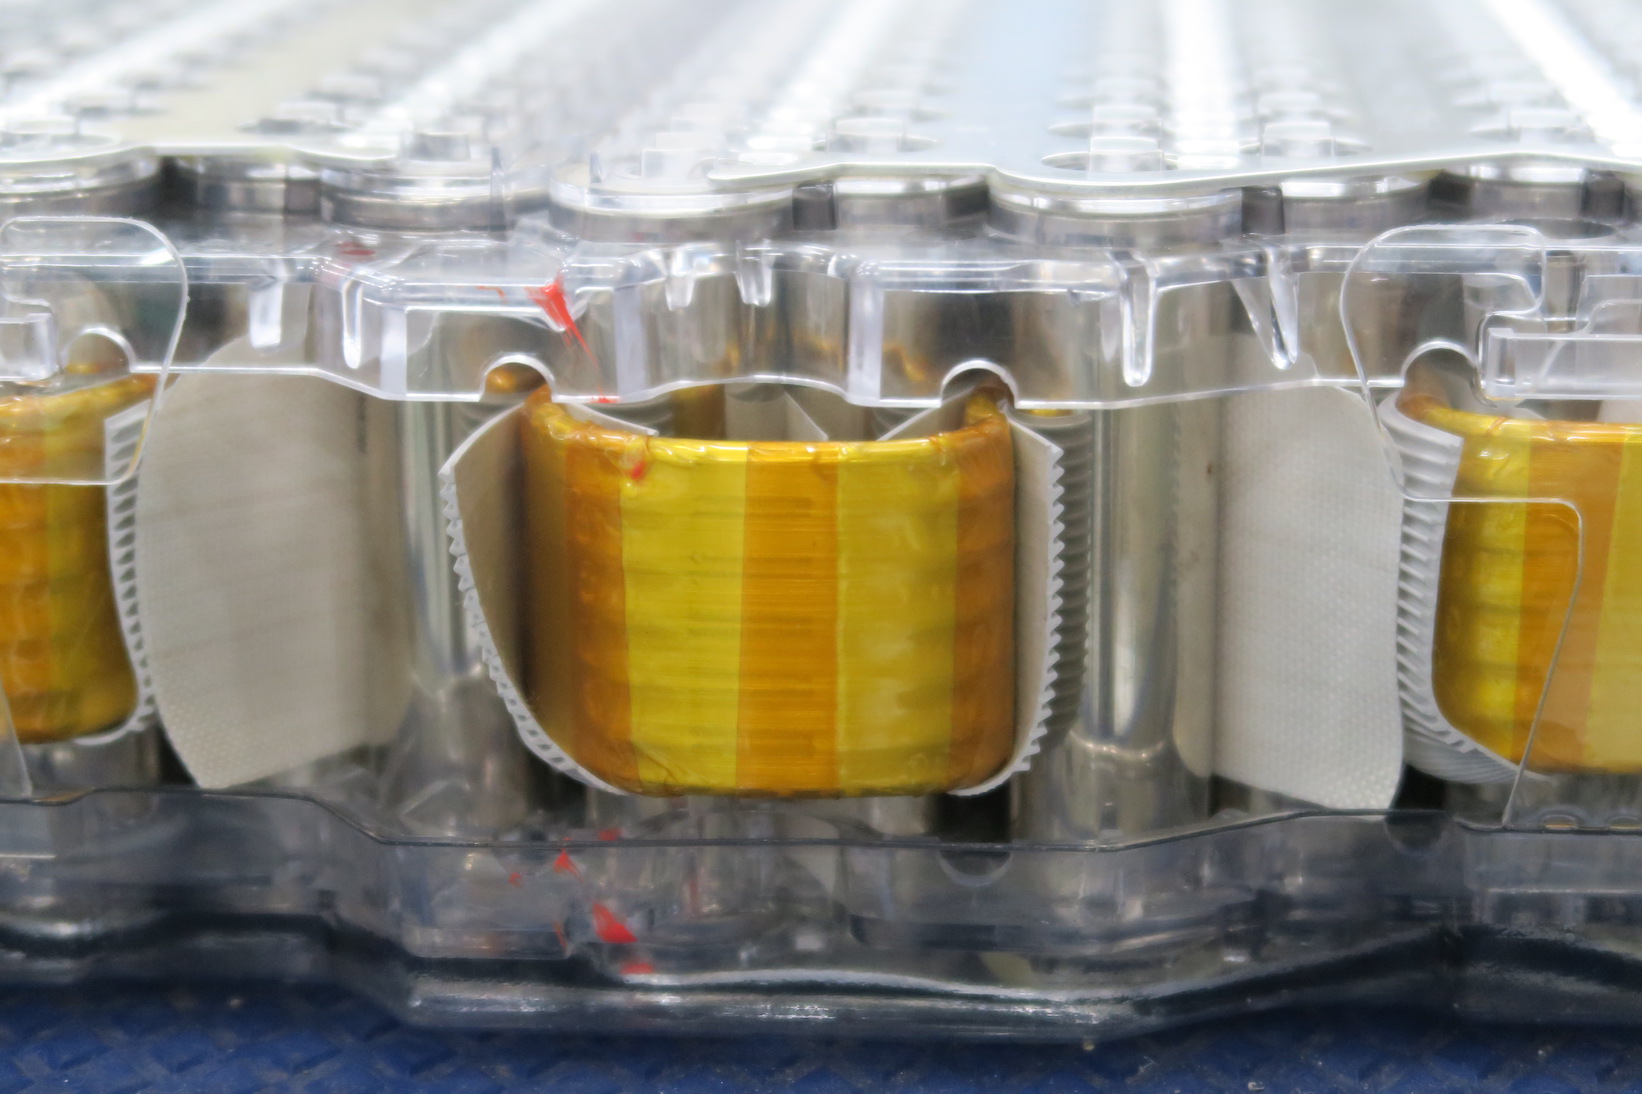 山本 真義 名古屋パワエレ武道会 普段目にすることのないテスラ モデルs用リチウムイオン電池 パナソニック製品 ２枚目写真からシリコン樹脂で保護しながら配管 黄色ビニール部 により効果的に冷却していることが分かる このバッテリ冷却